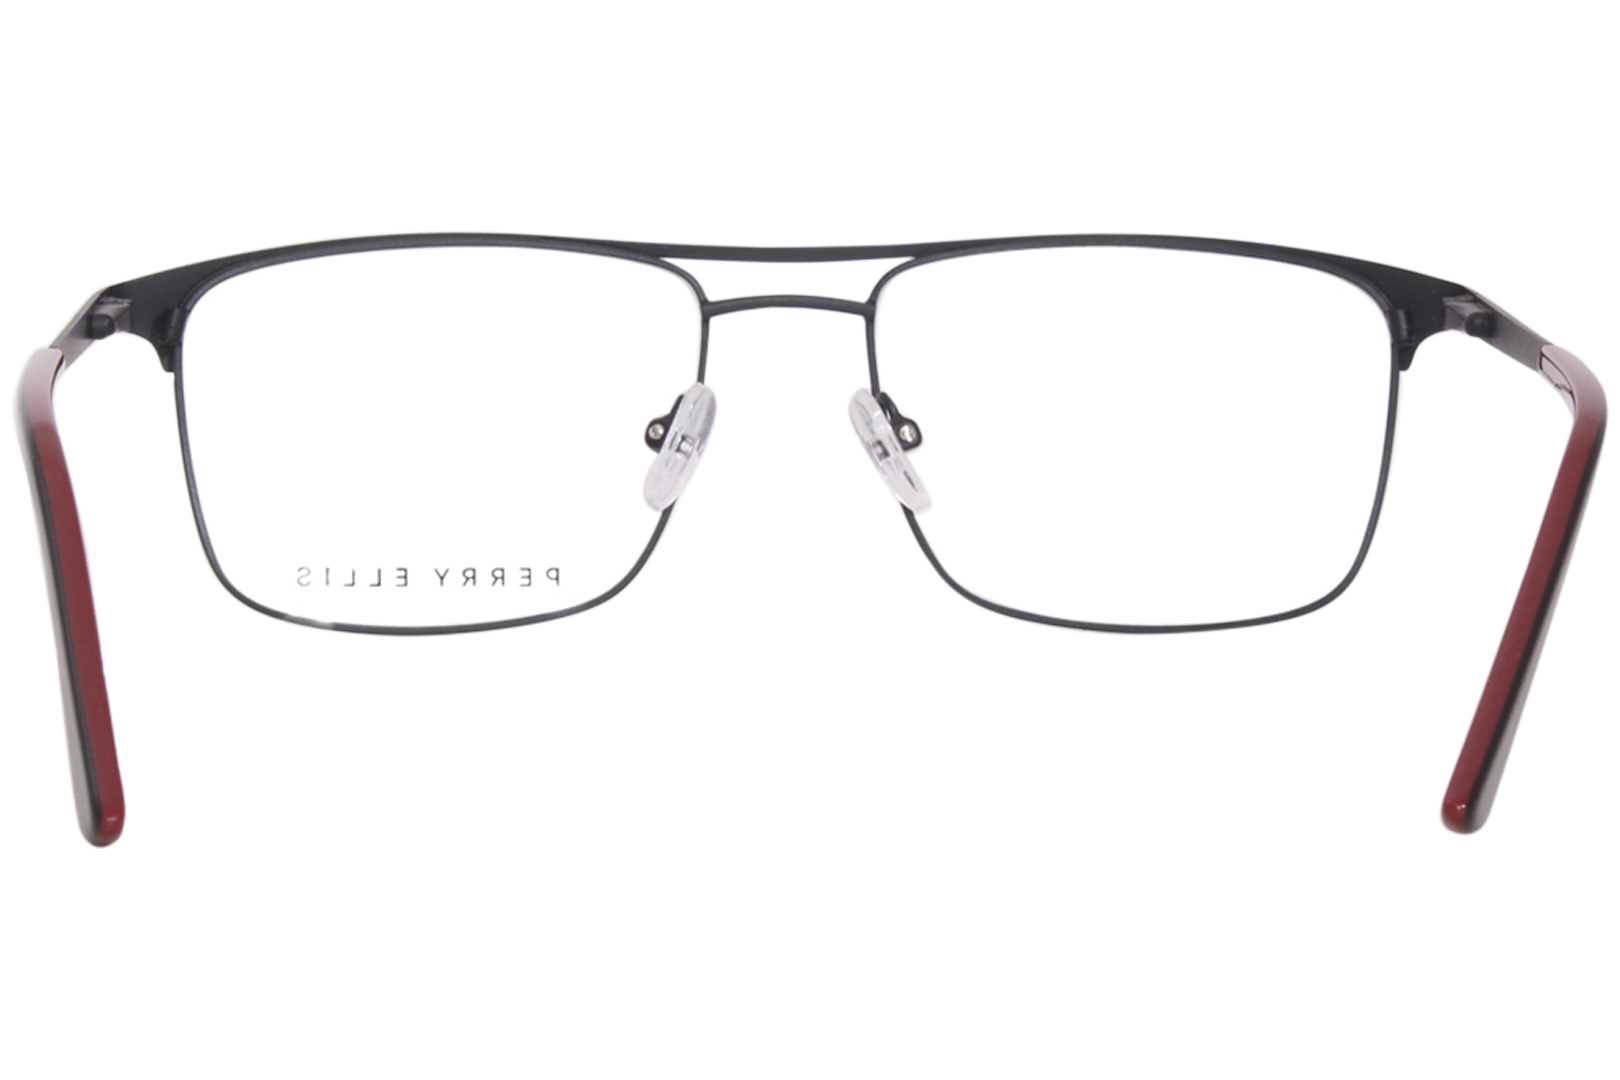 Perry Ellis PE1270-2 Eyeglasses Men's Matte Black Full Rim Square Shape ...